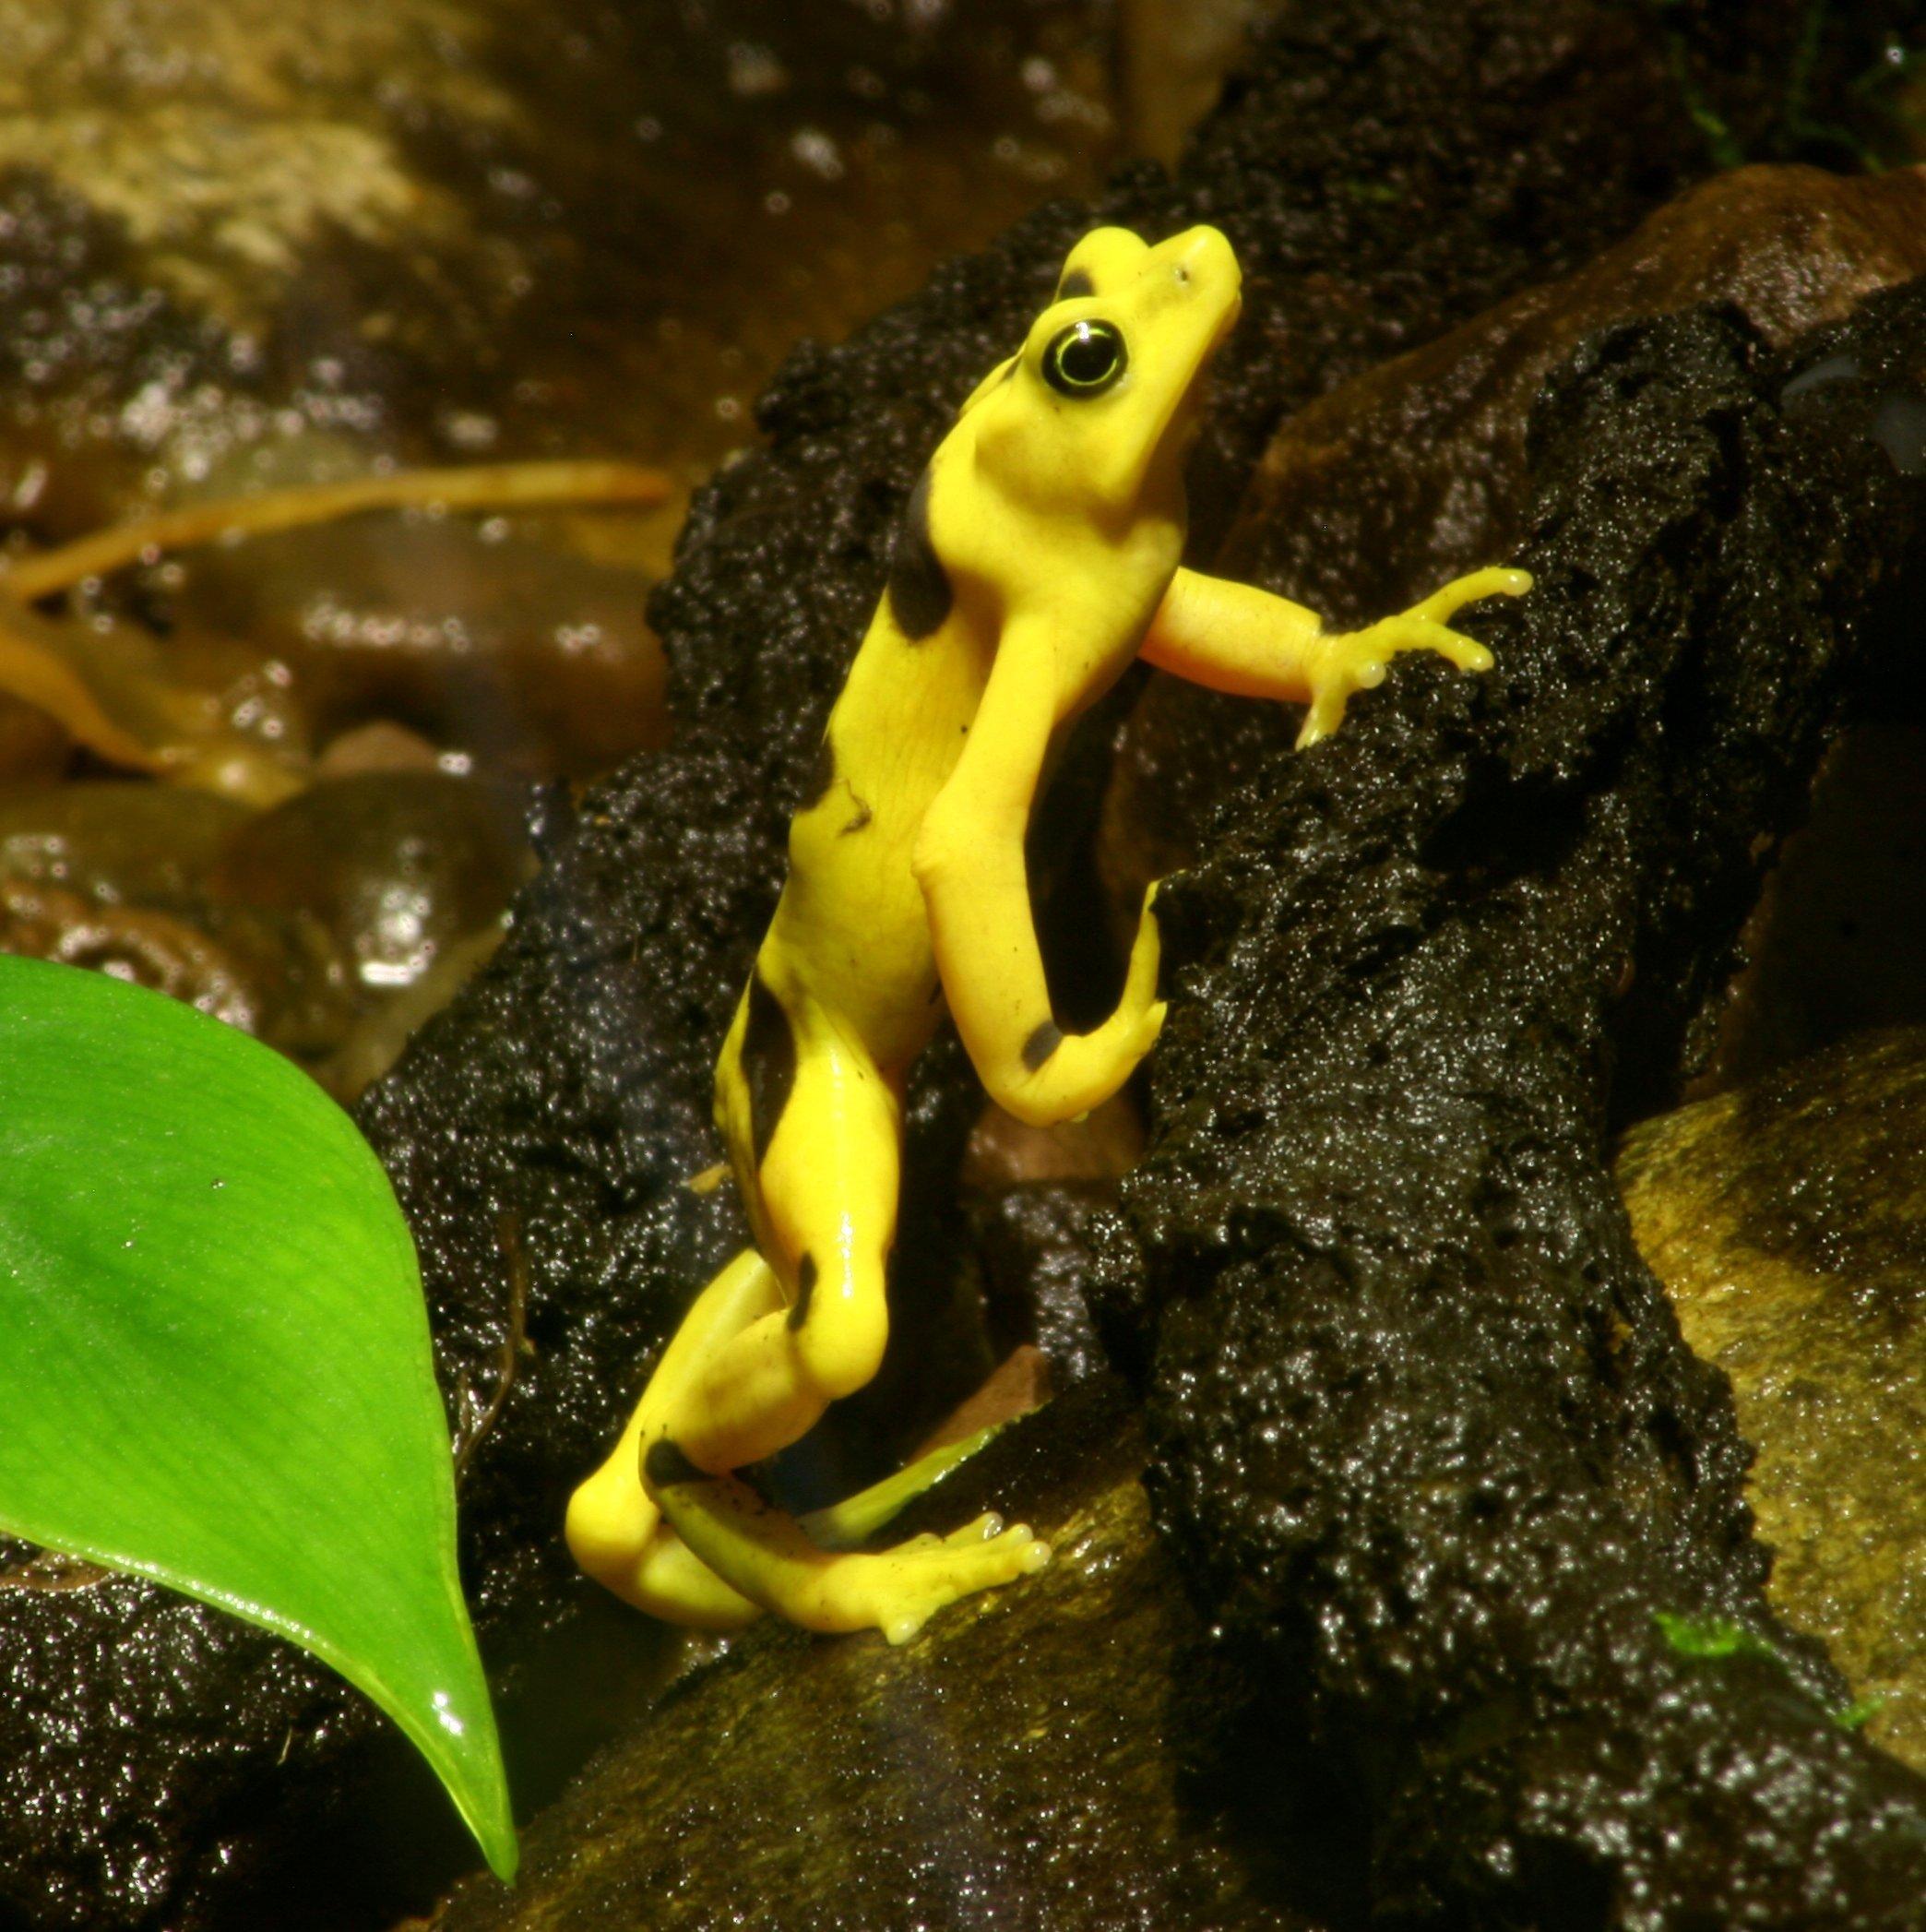 https://media.premiercasa.com/thumbnail/valle de anton - golden frog.jpg